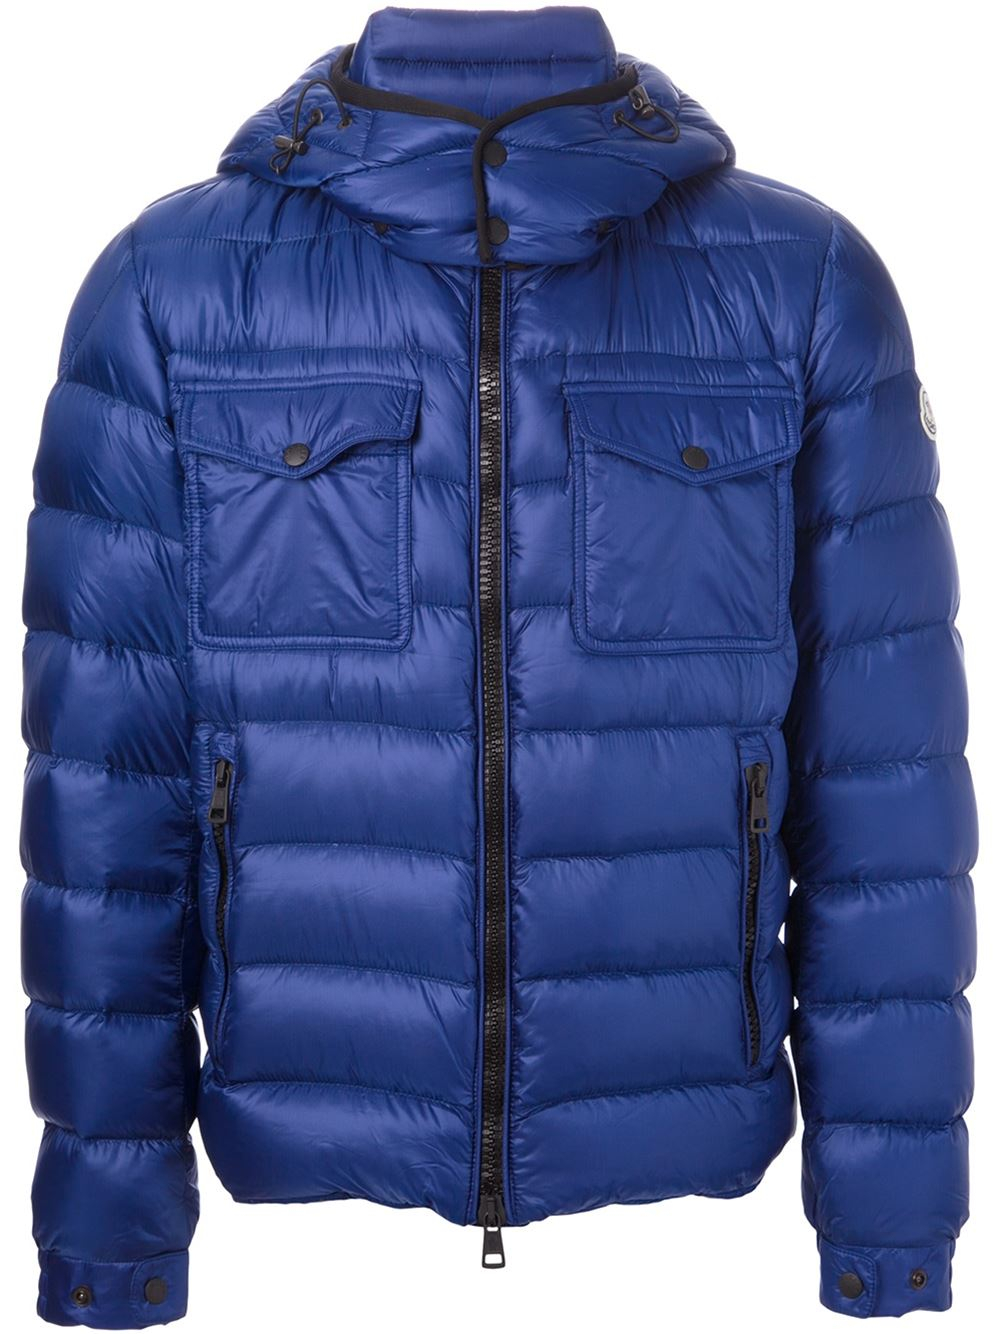 Lyst - Moncler Edward Padded Jacket in Blue for Men